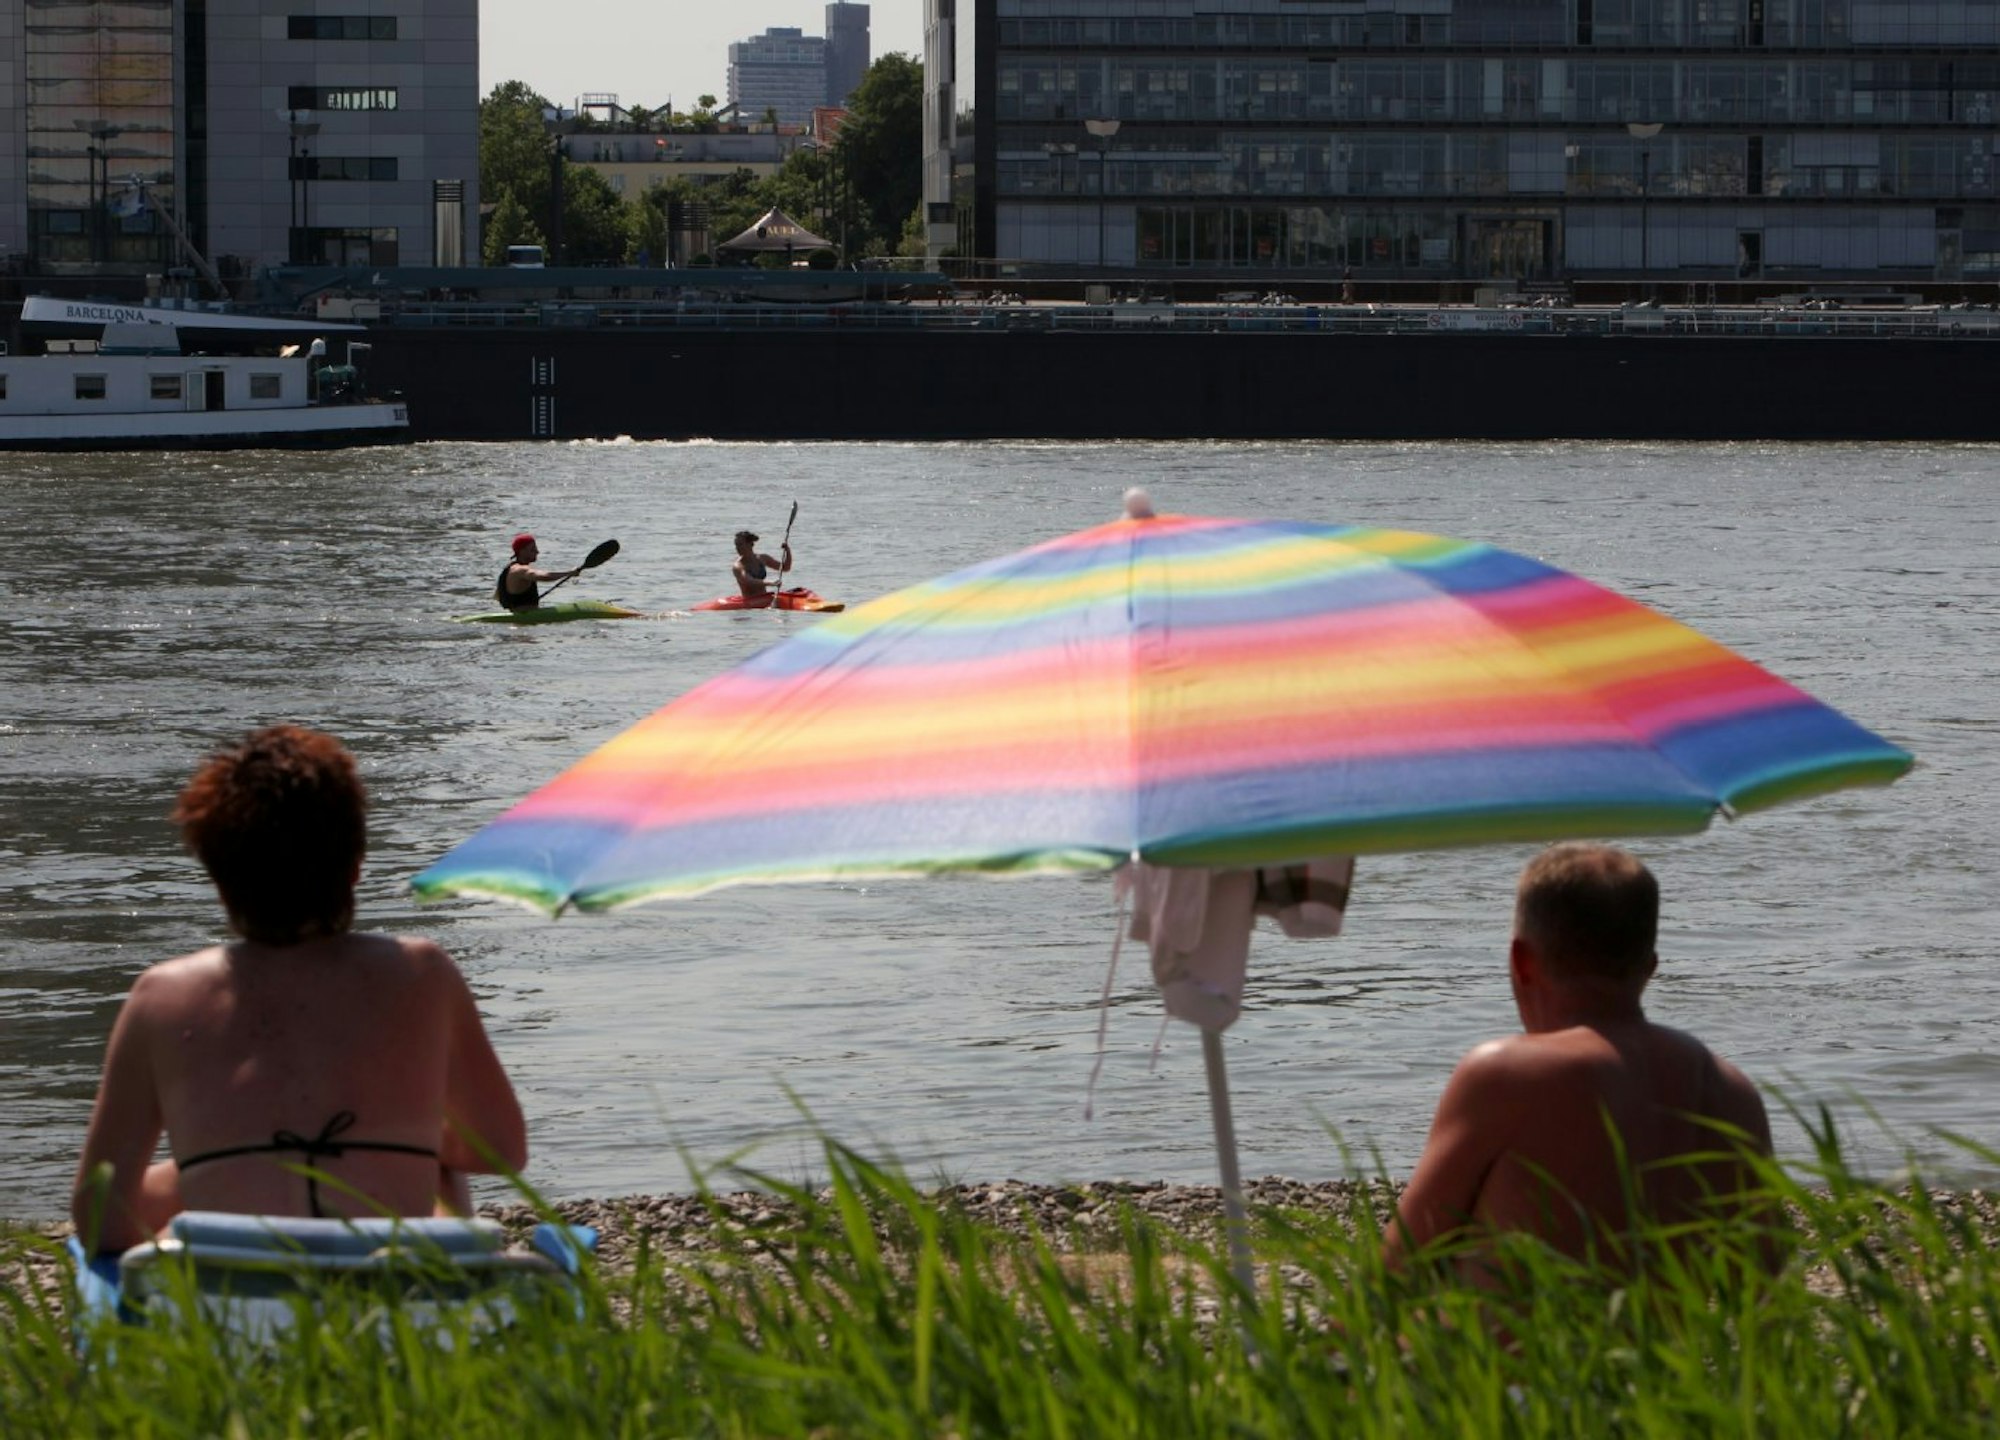 Pollerwiesen zum entspannen: Auch die Kanuten im Rhein haben Spaß am Kaiserwetter über Köln.